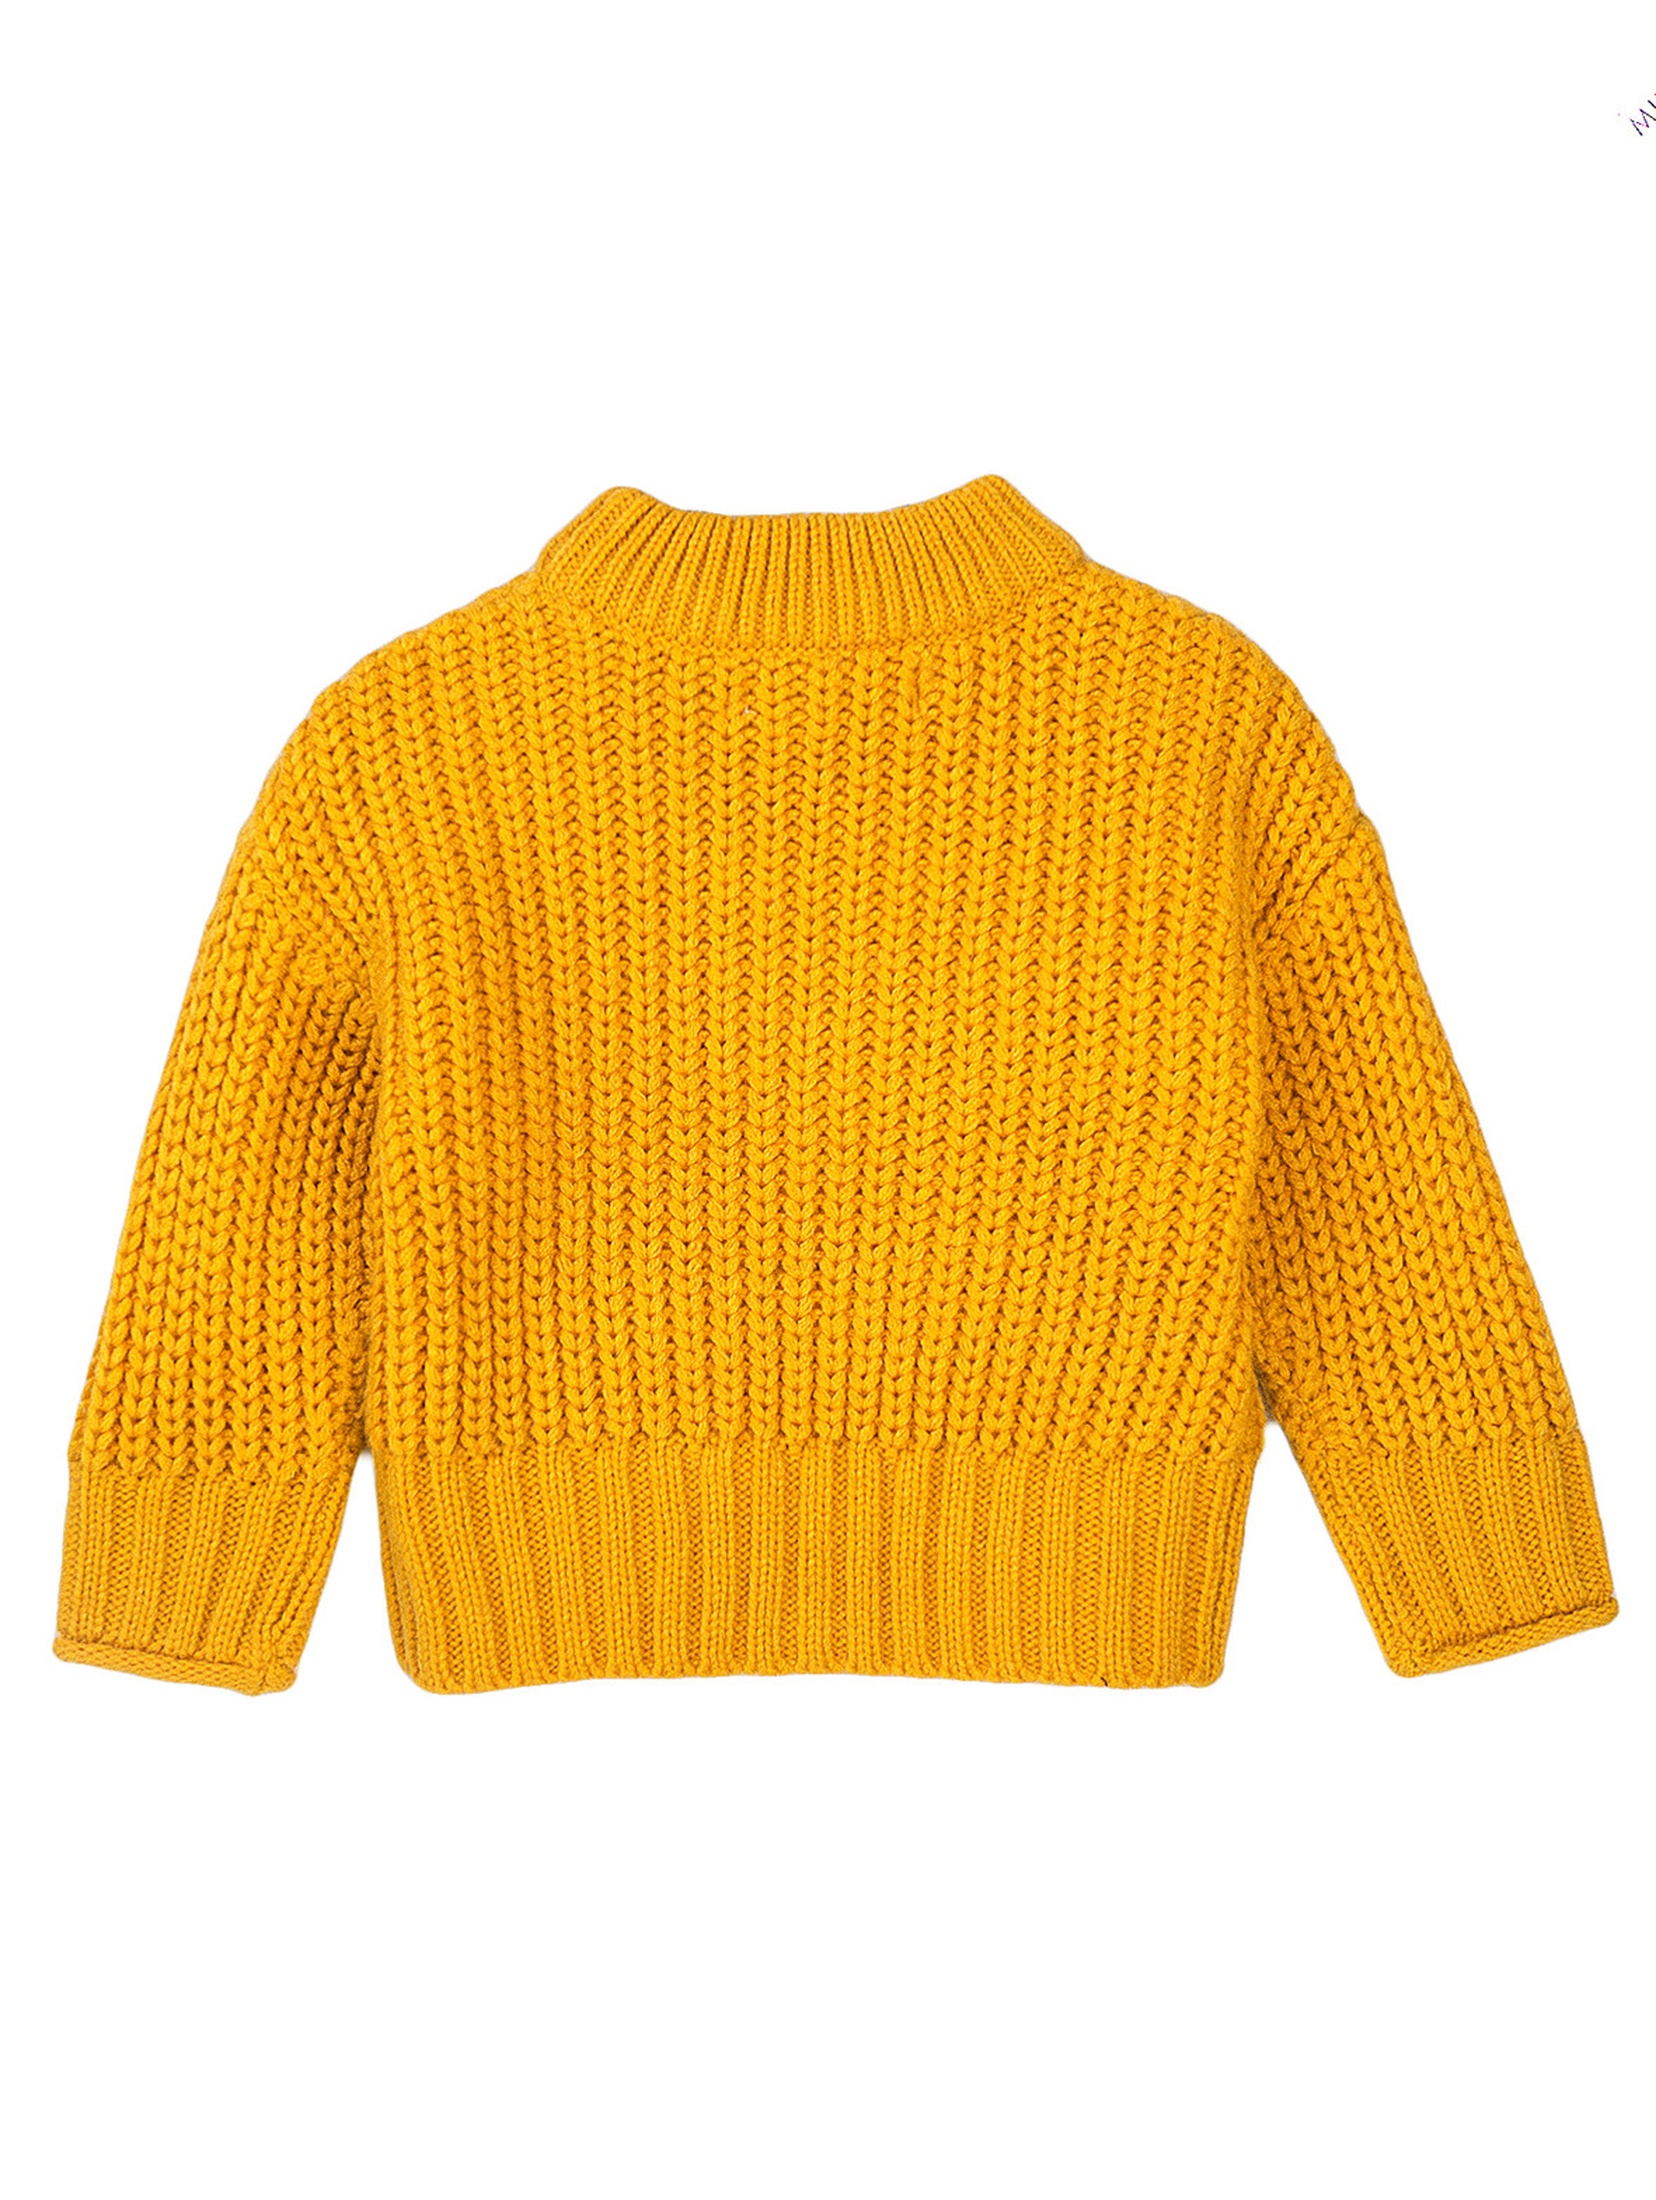 Niemowlęcy sweter nierozpinany z półgolfem - żółty